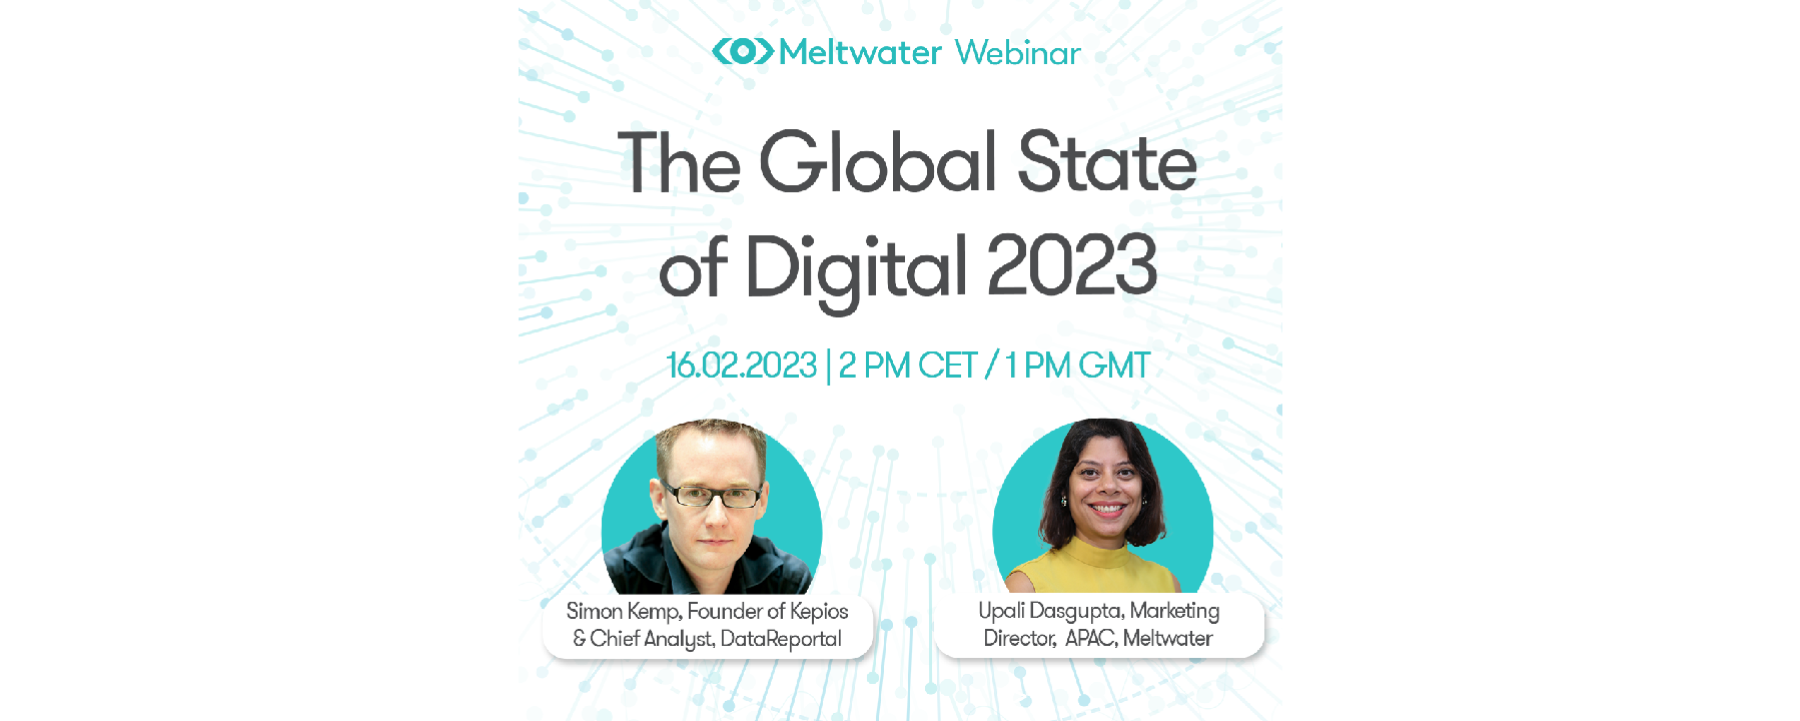 The Global State of Digital 2023 - EMEA